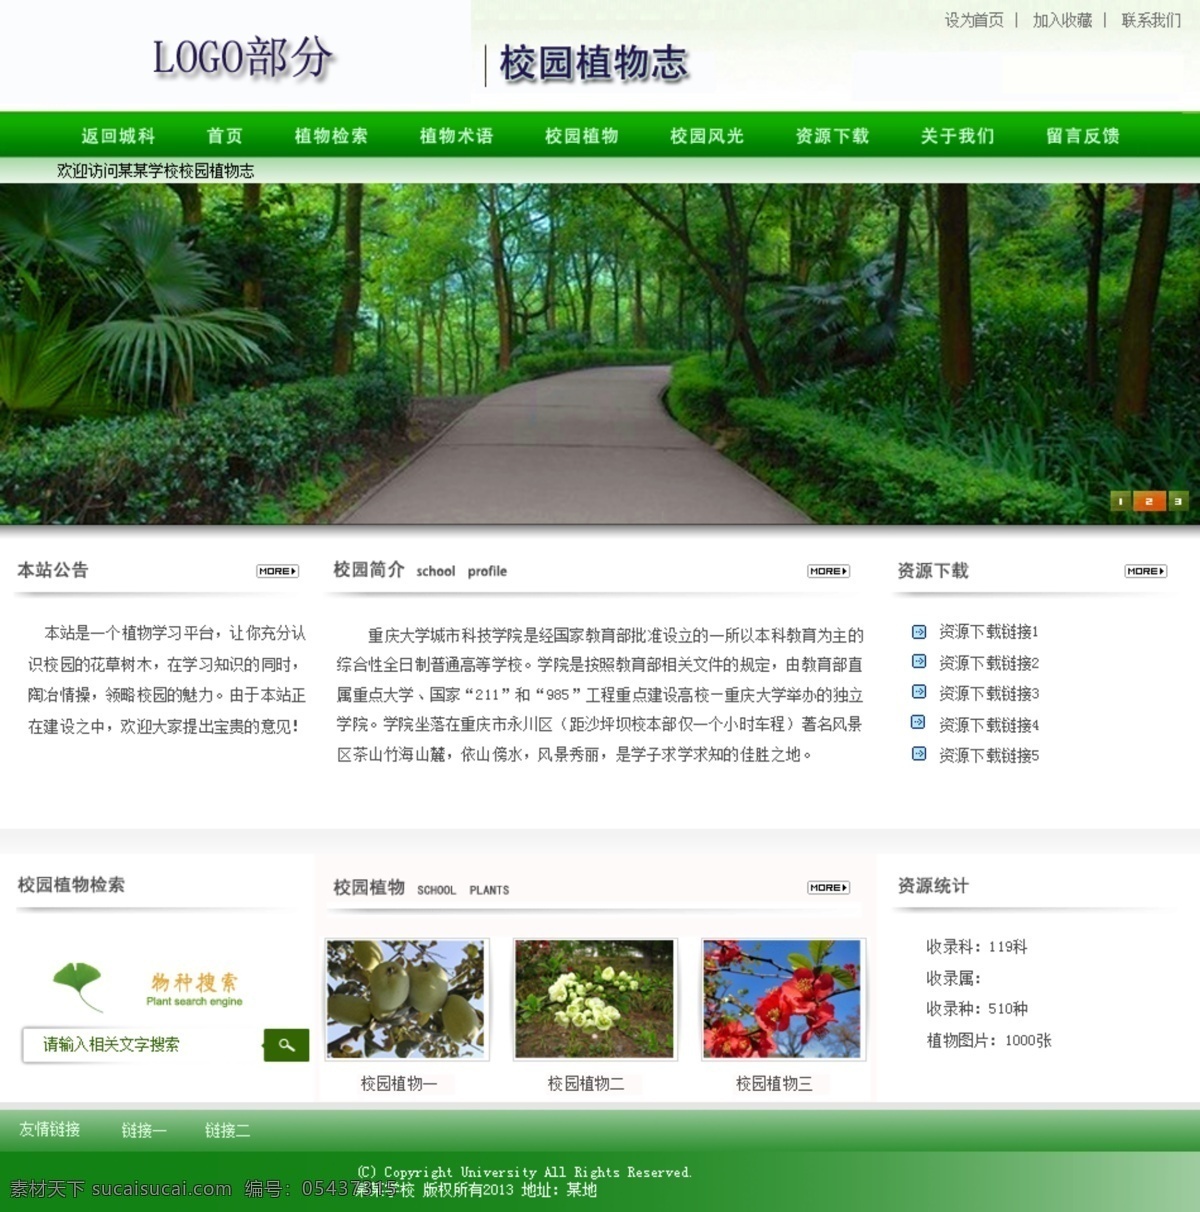 绿色校园 网页模板 网页设计 校园 源文件 中文模板 植物 志 网页 植物志 网页素材